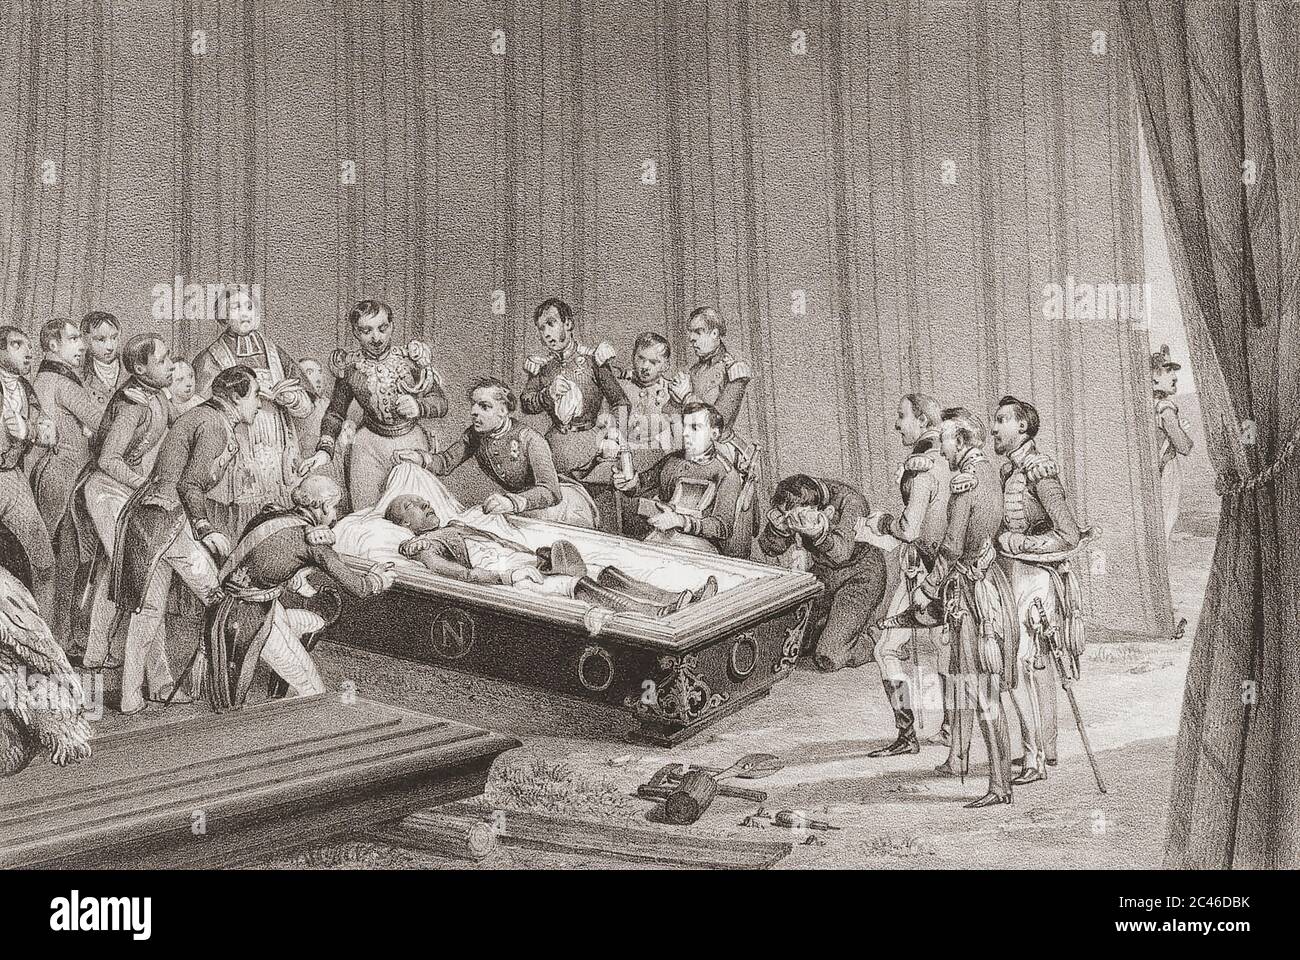 El cuerpo bien conservado de Napoleón reveló cuando su ataúd fue abierto en Santa Elena en 1840 antes de que sus restos fueran devueltos a Francia. Había muerto 19 años antes, el 5 de mayo de 1821. Después de una obra de mediados del siglo XIX de Victor Adam. Foto de stock